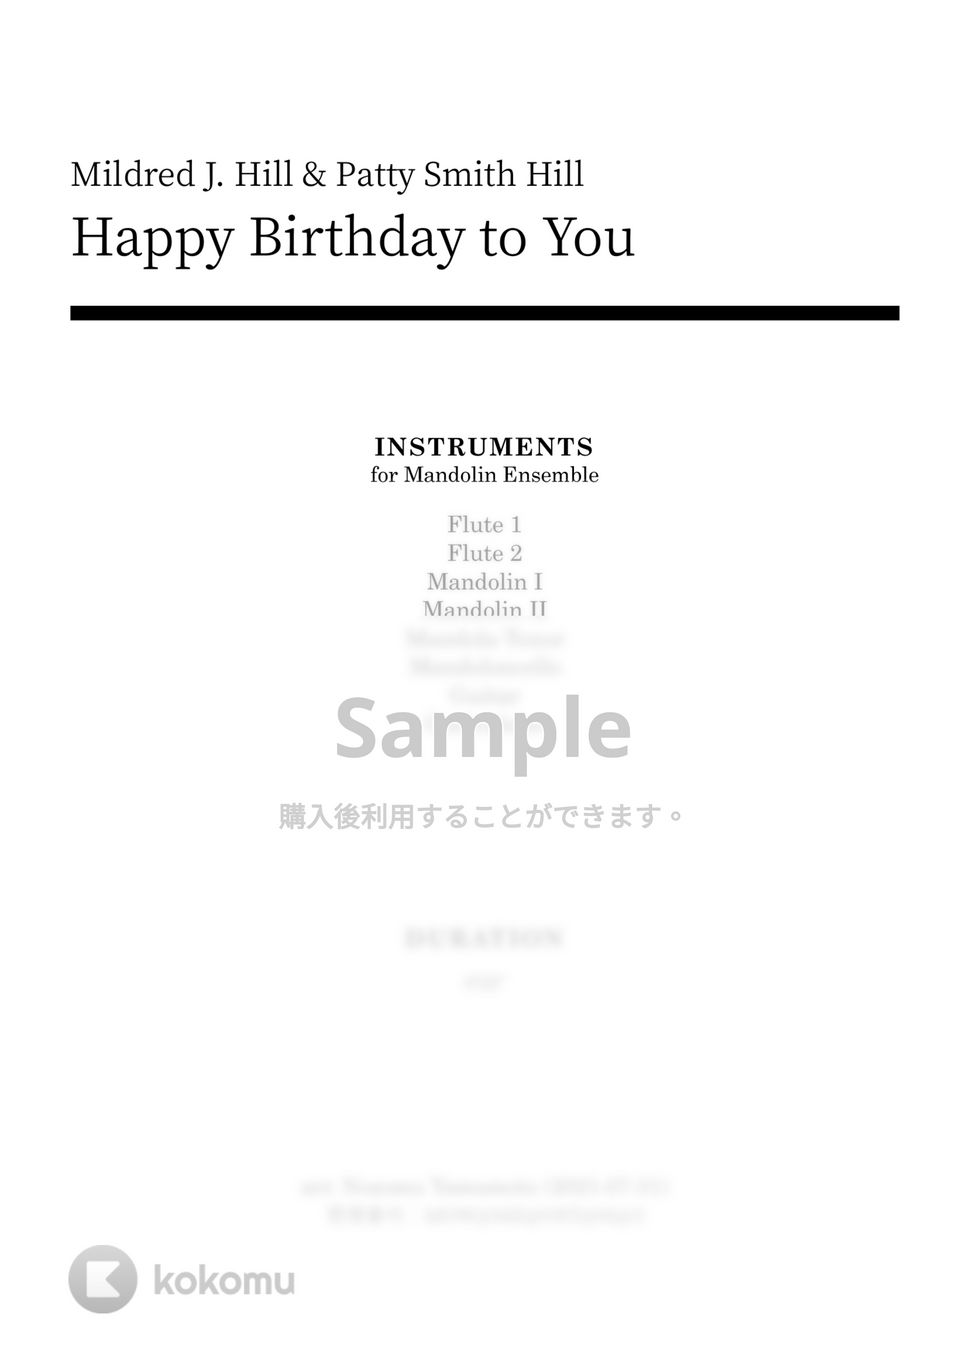 Happy Birthday to You - Happy Birthday to You by MOW